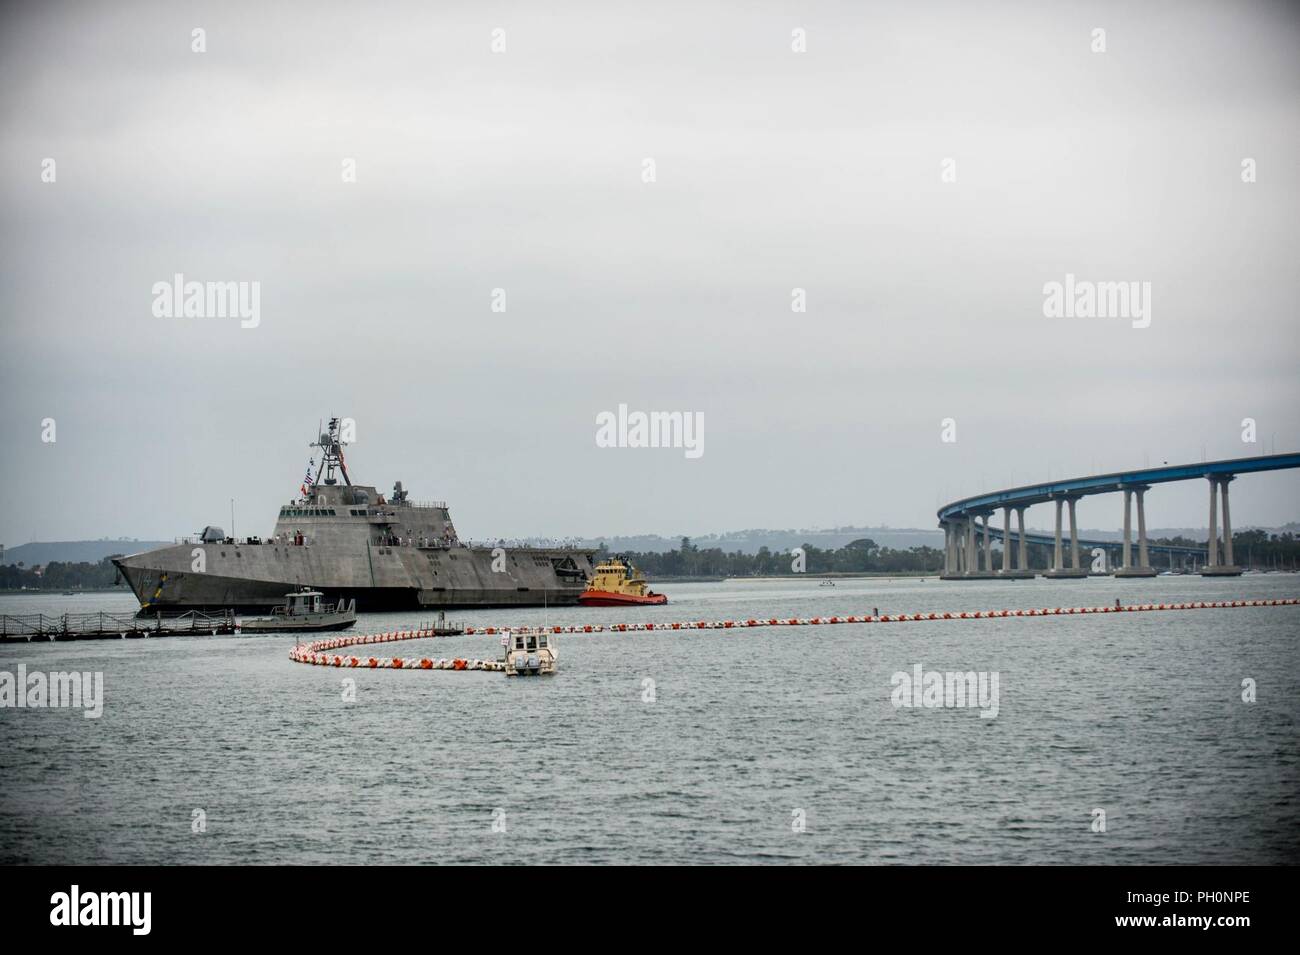 La base navale de SAN DIEGO (19 juin 2018) l'indépendance la variante de combat littoral USS Manchester (LCS 14) arrive à la base navale de San Diego après avoir terminé le premier passage du navire comme un nouveau navire commandé. Manchester est la neuvième LCS pour être homeported à San Diego Naval Base Banque D'Images